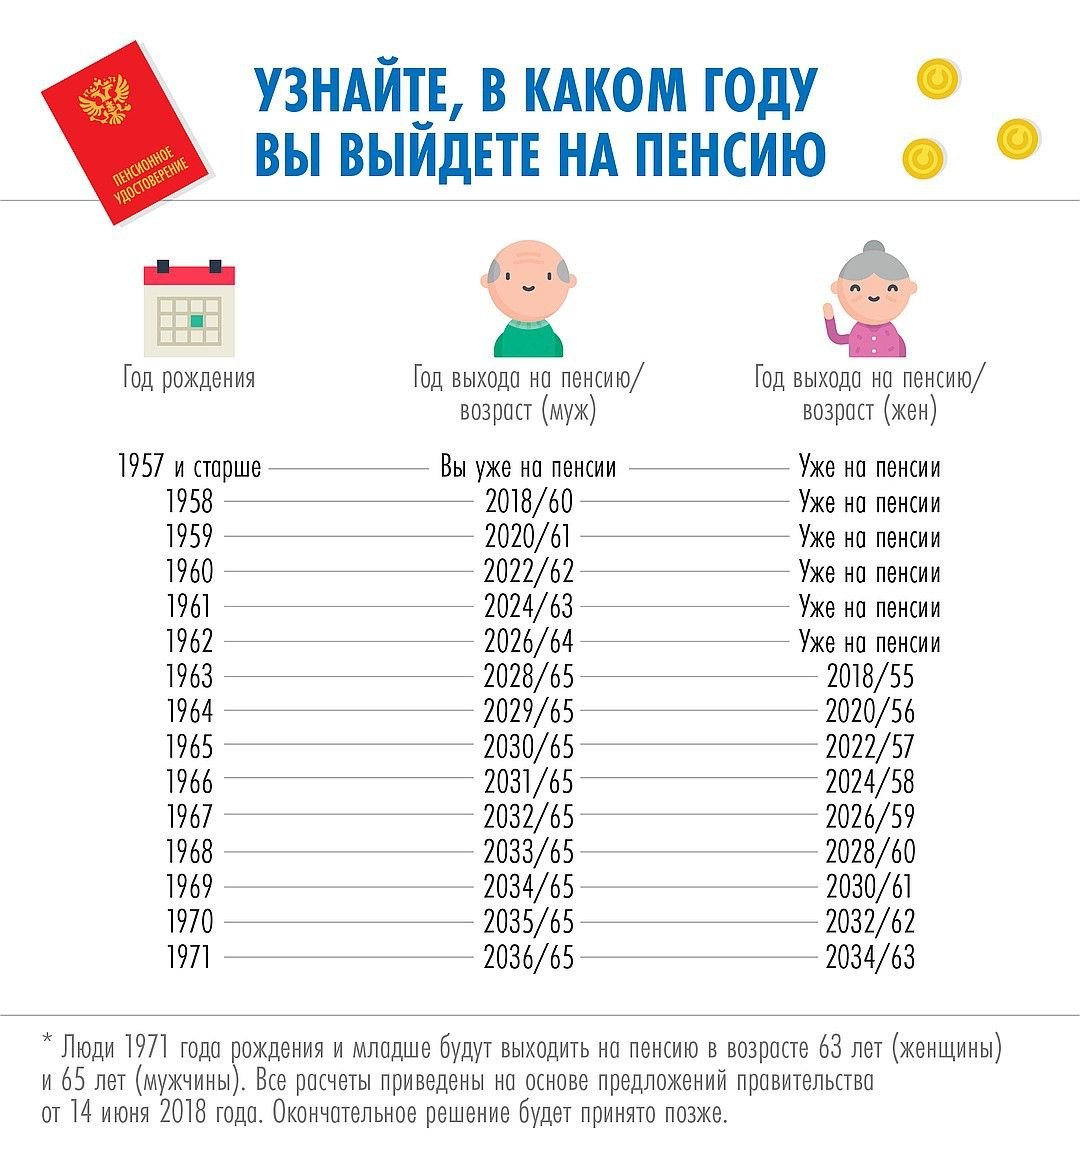 Увеличение пенсионного возраста в России с 2019 года. Последние новости 56 2022 1960, 62